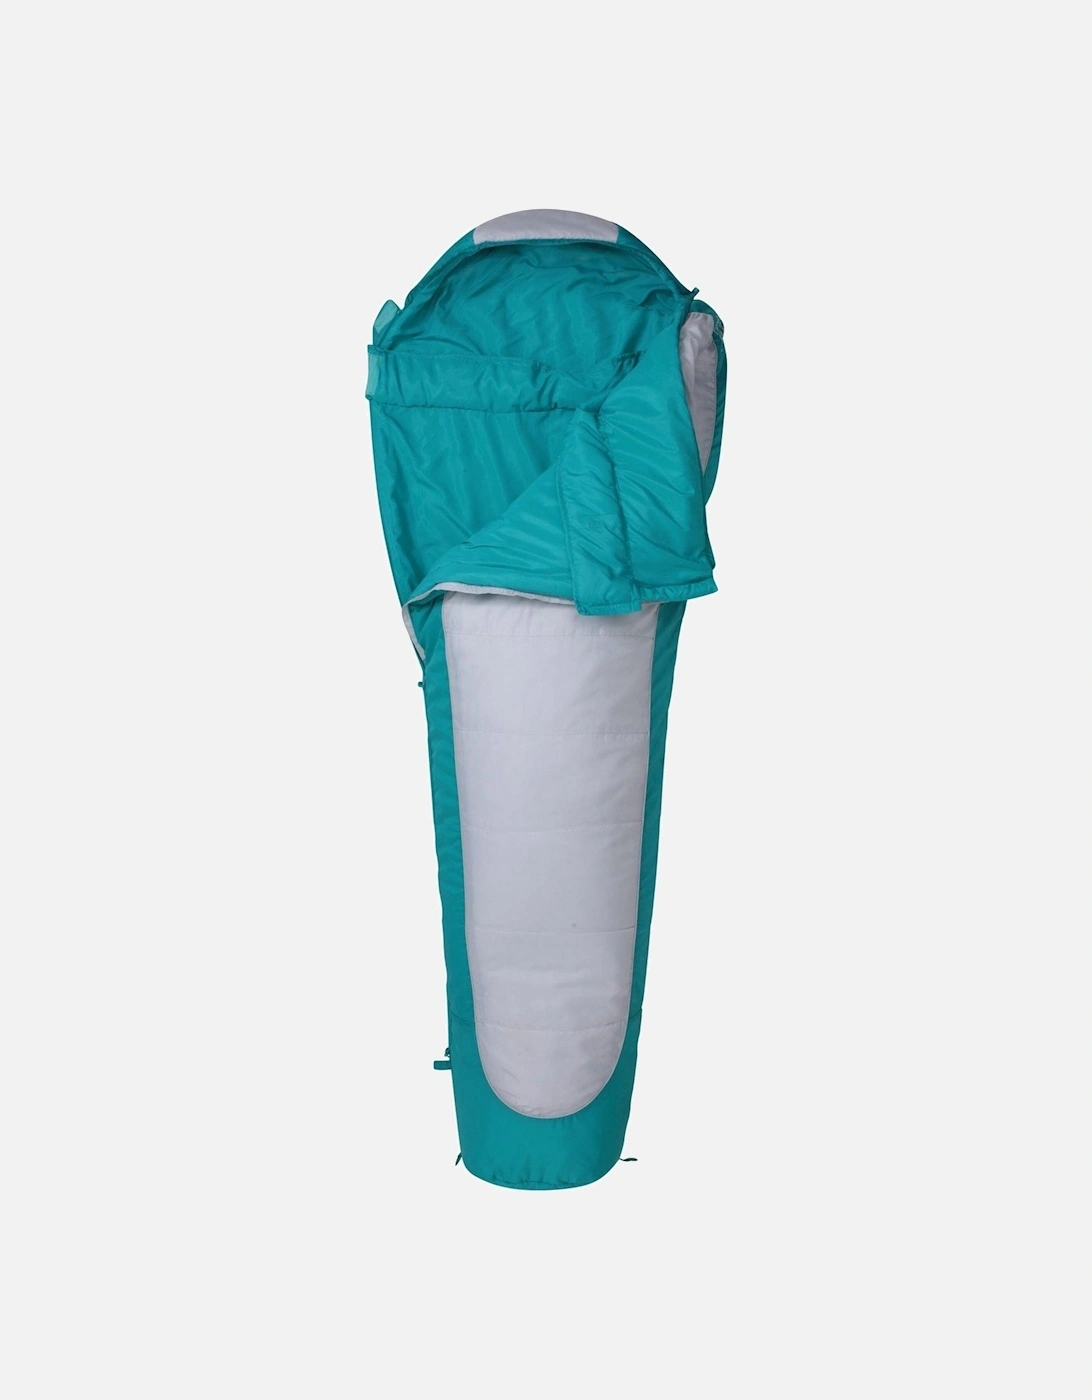 Unisex Adult Midseason Microlite 950 Mummy Sleeping Bag Set